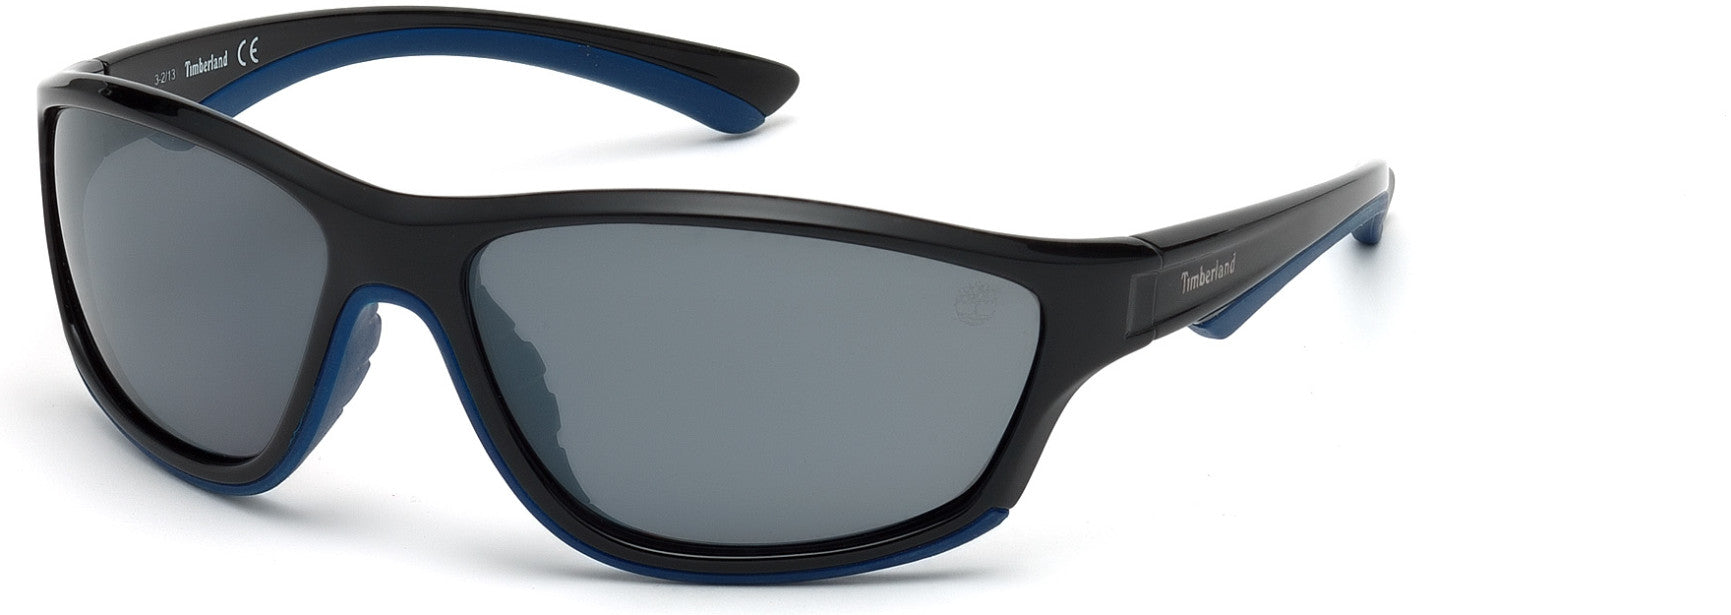 Timberland TB9045 Geometric Sunglasses 01D-01D - Shiny Black, Blue Rubber Details / Smoke Flash Mirror Lenses